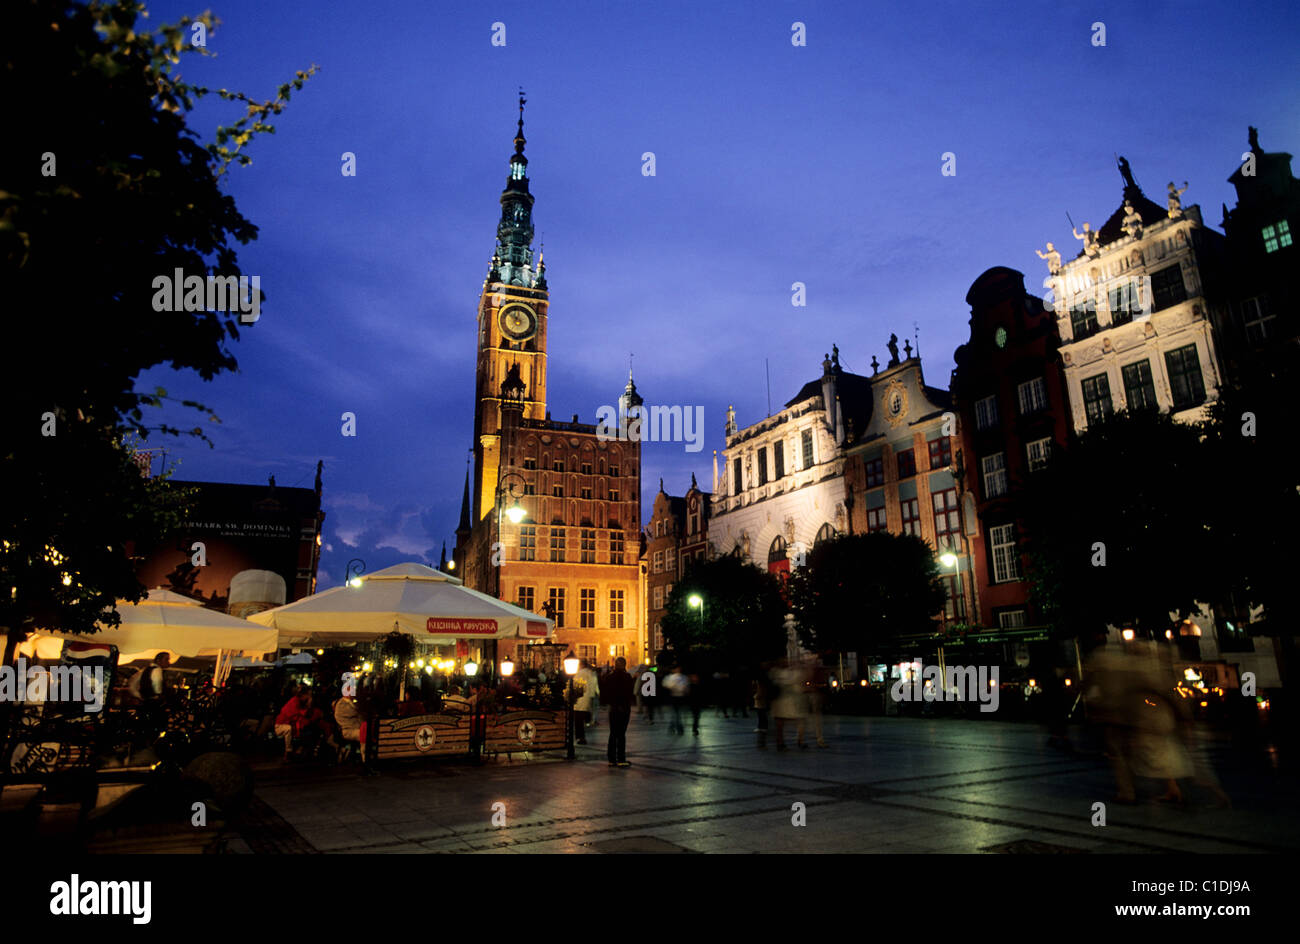 Polonia, Pomerania Oriental, Gdansk, la principal vía de la ciudad de largo Mercado (Dlugi Targ) y el ayuntamiento (Ratusz Glownego Miasta) Foto de stock